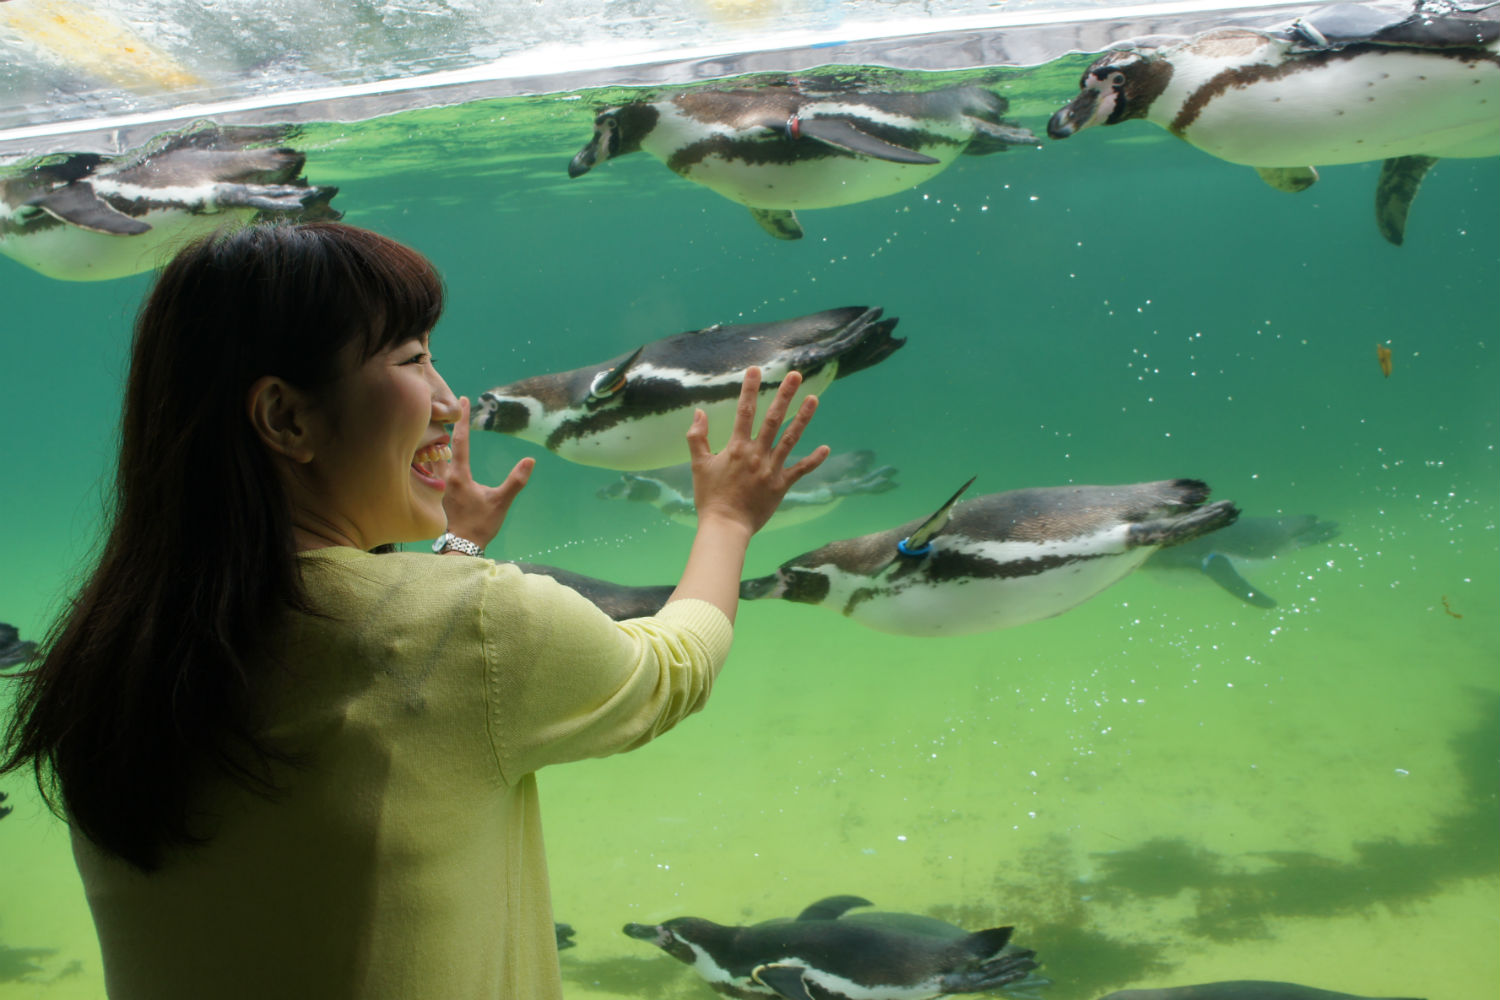 葛西臨海水族館 マグロの大水槽は必見 館内の魅力を徹底レポート